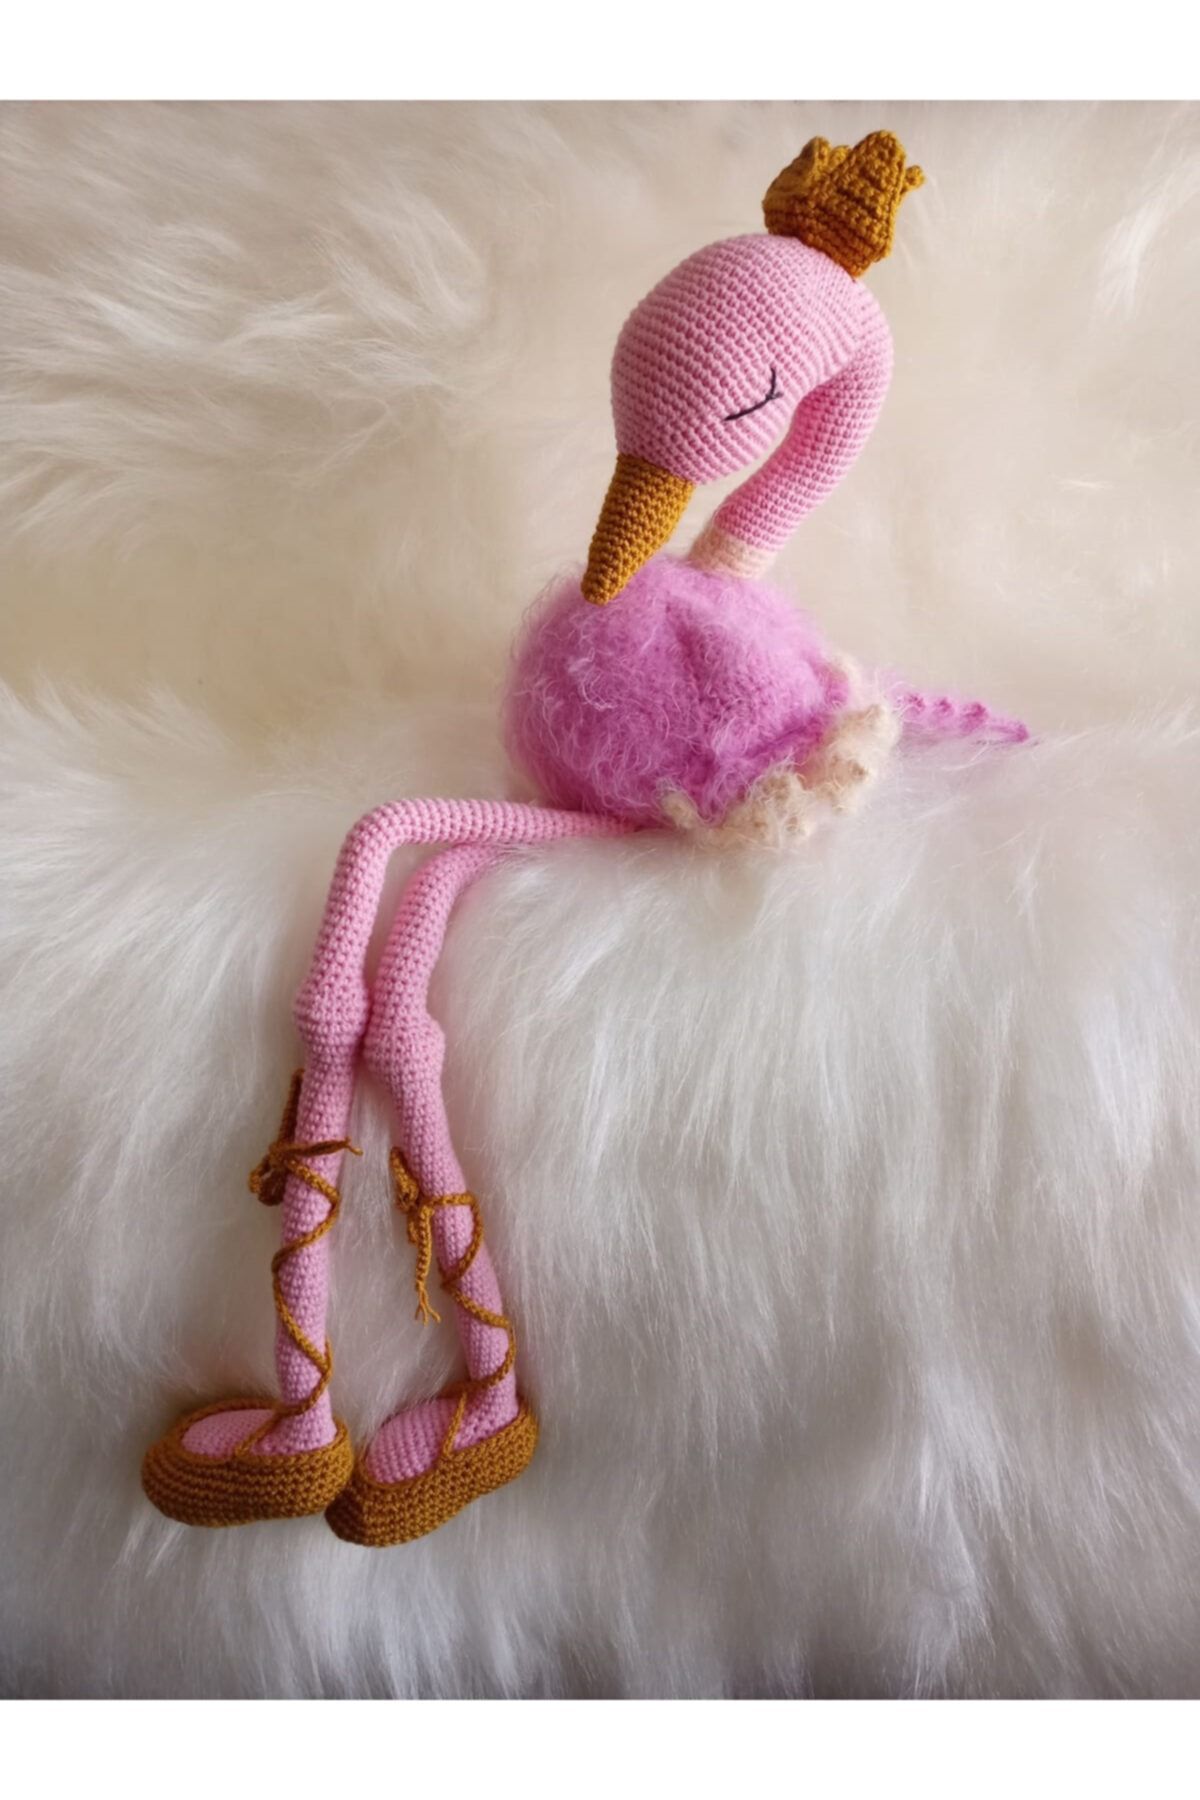 Kardelendesign Pembe Amigurumi Kraliçe Flamingo Yıkanabilir El Örmesi Doğal Oyuncak